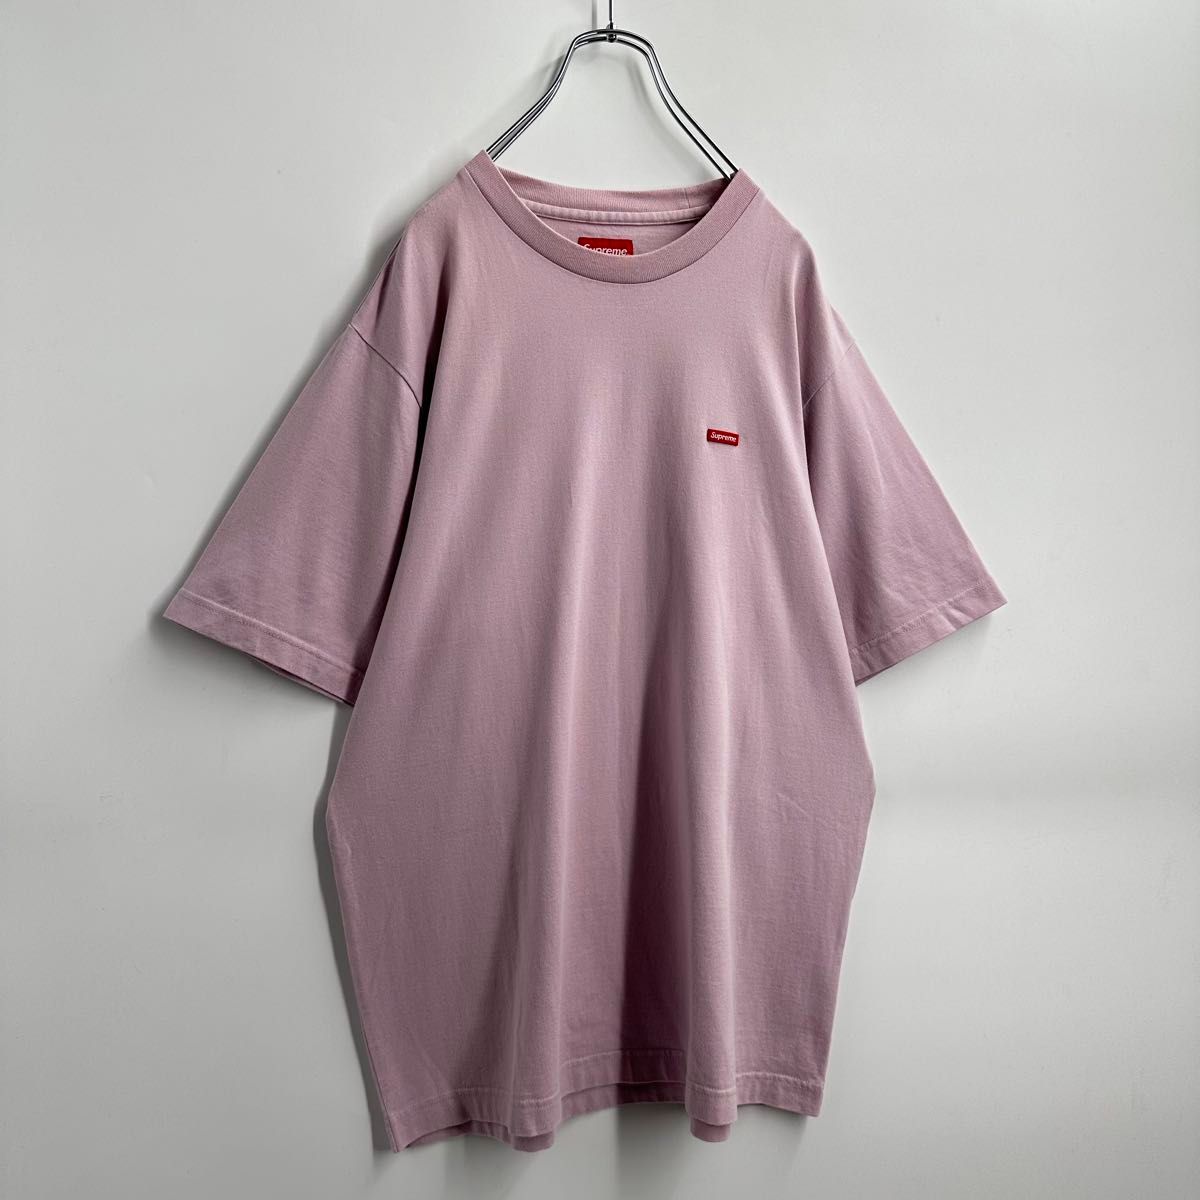 【希少カラー】シュプリーム スモールボックスロゴ Tシャツ パープル 人気モデルシュプリーム